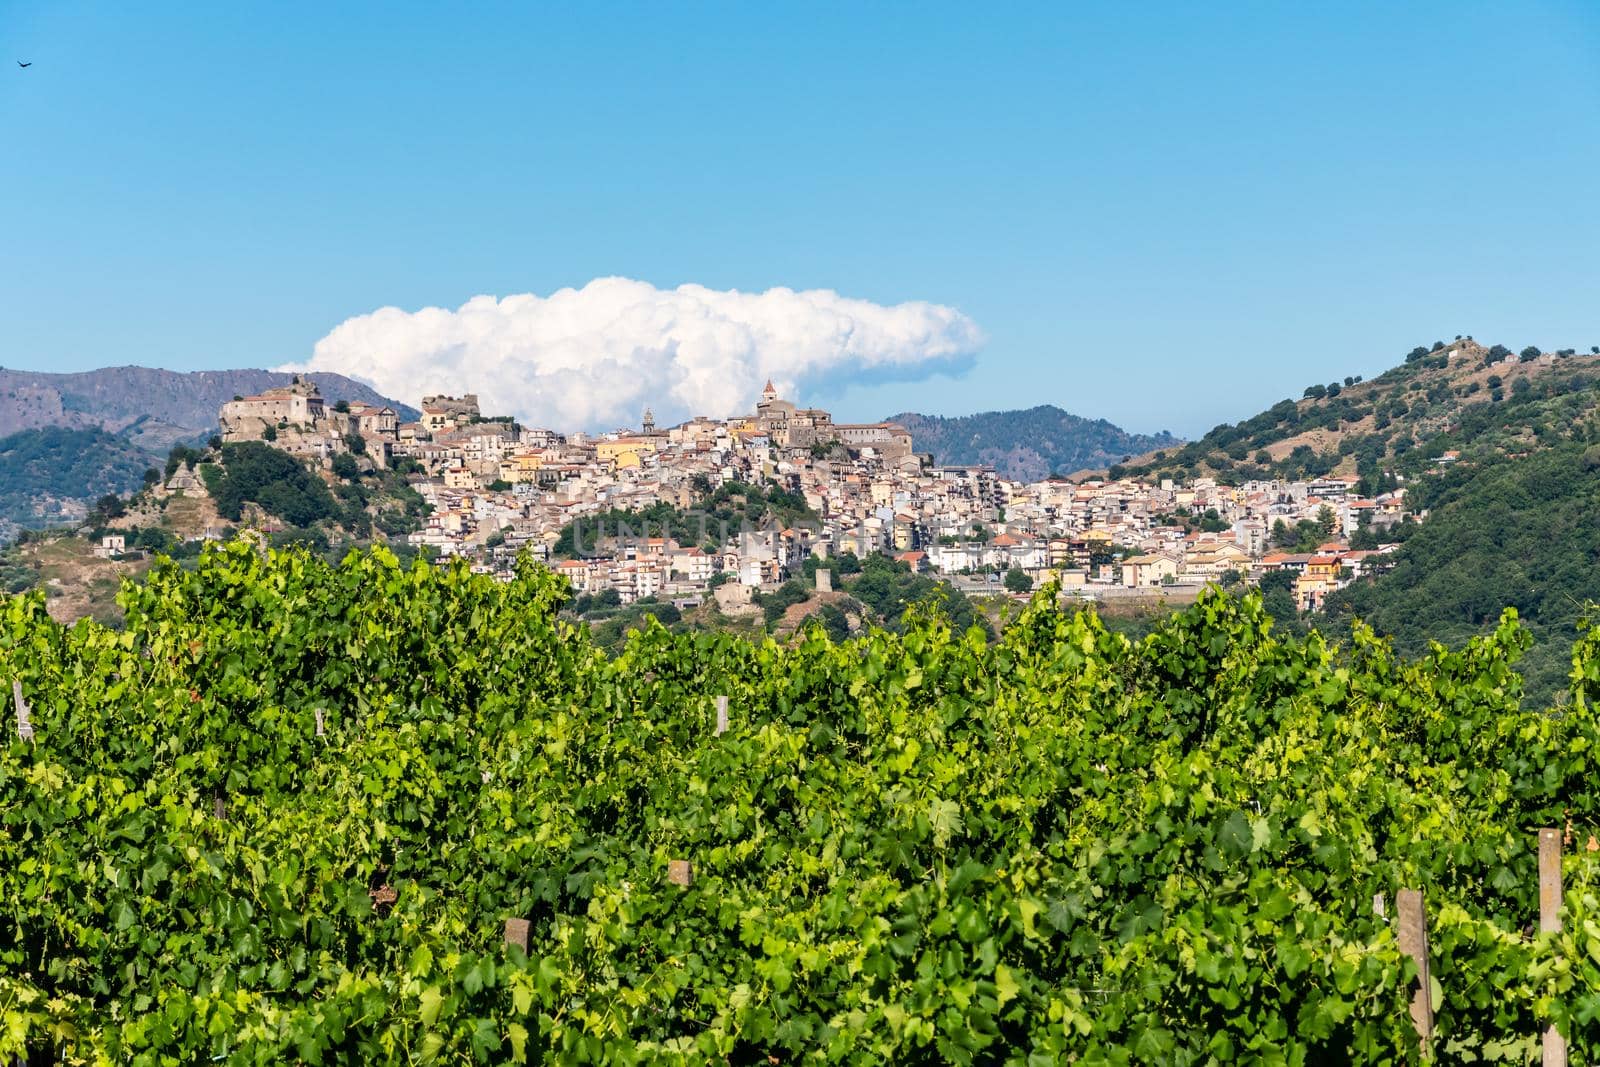 Panoramic view of Castiglione di Sicilia from Cuba di Santa Domenica, Italy